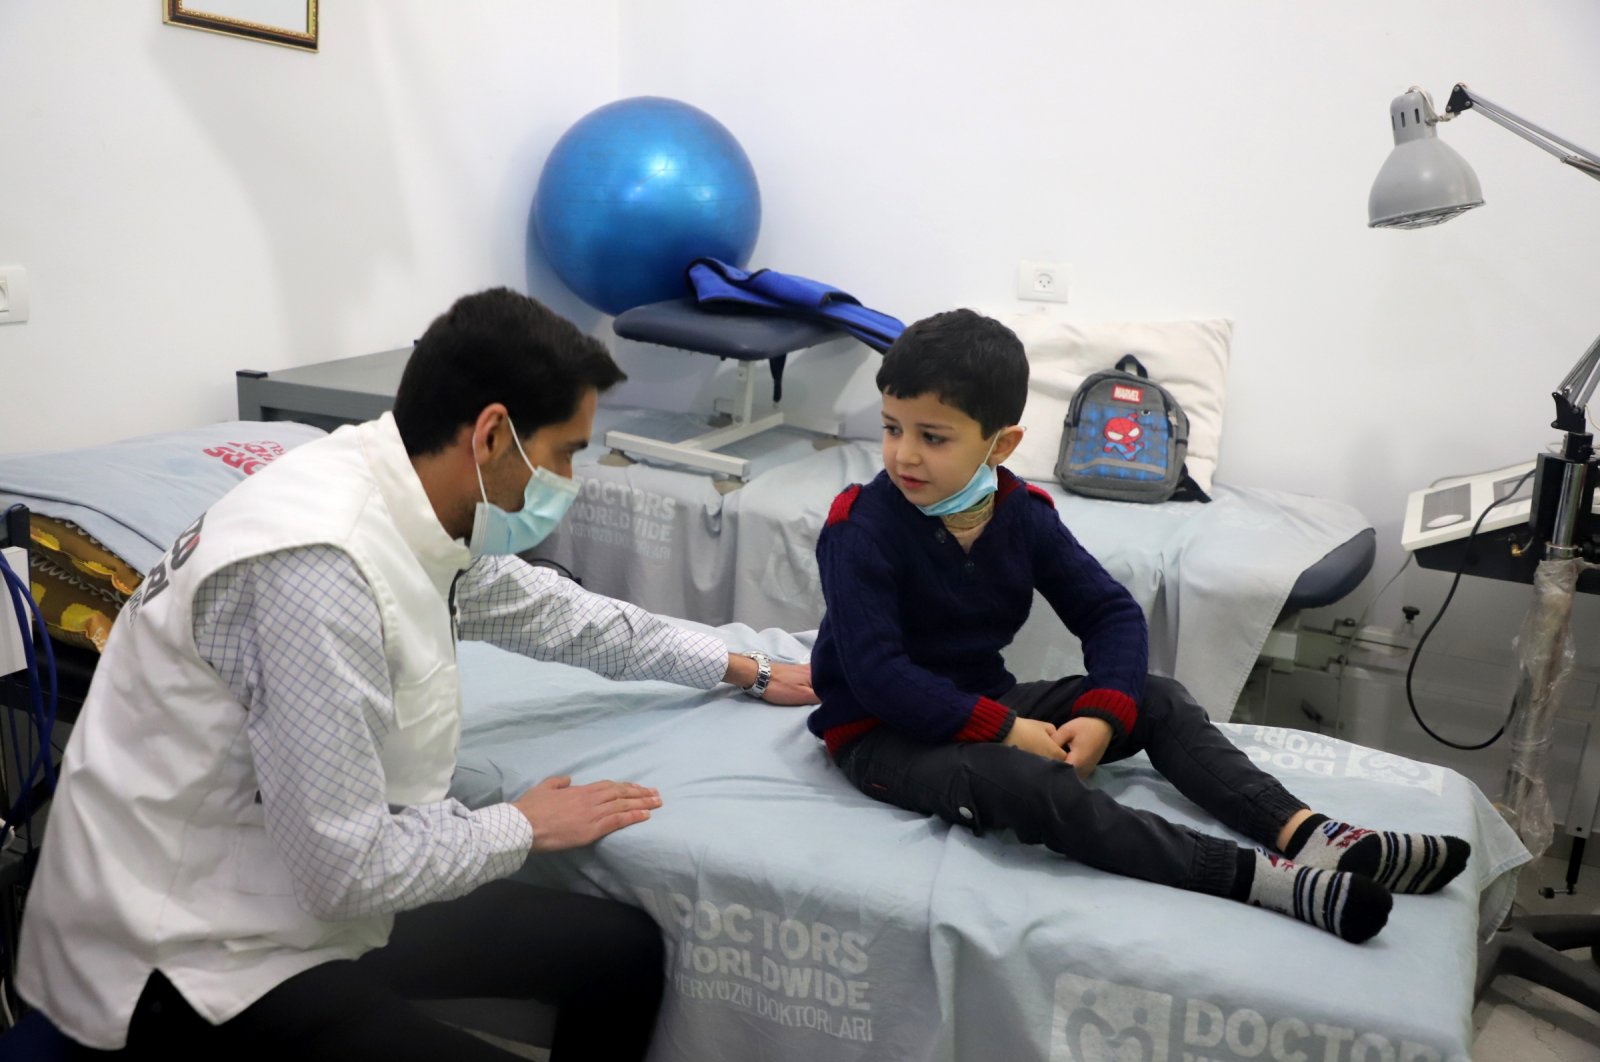 Badan amal Turki mendirikan pusat rehabilitasi di Gaza